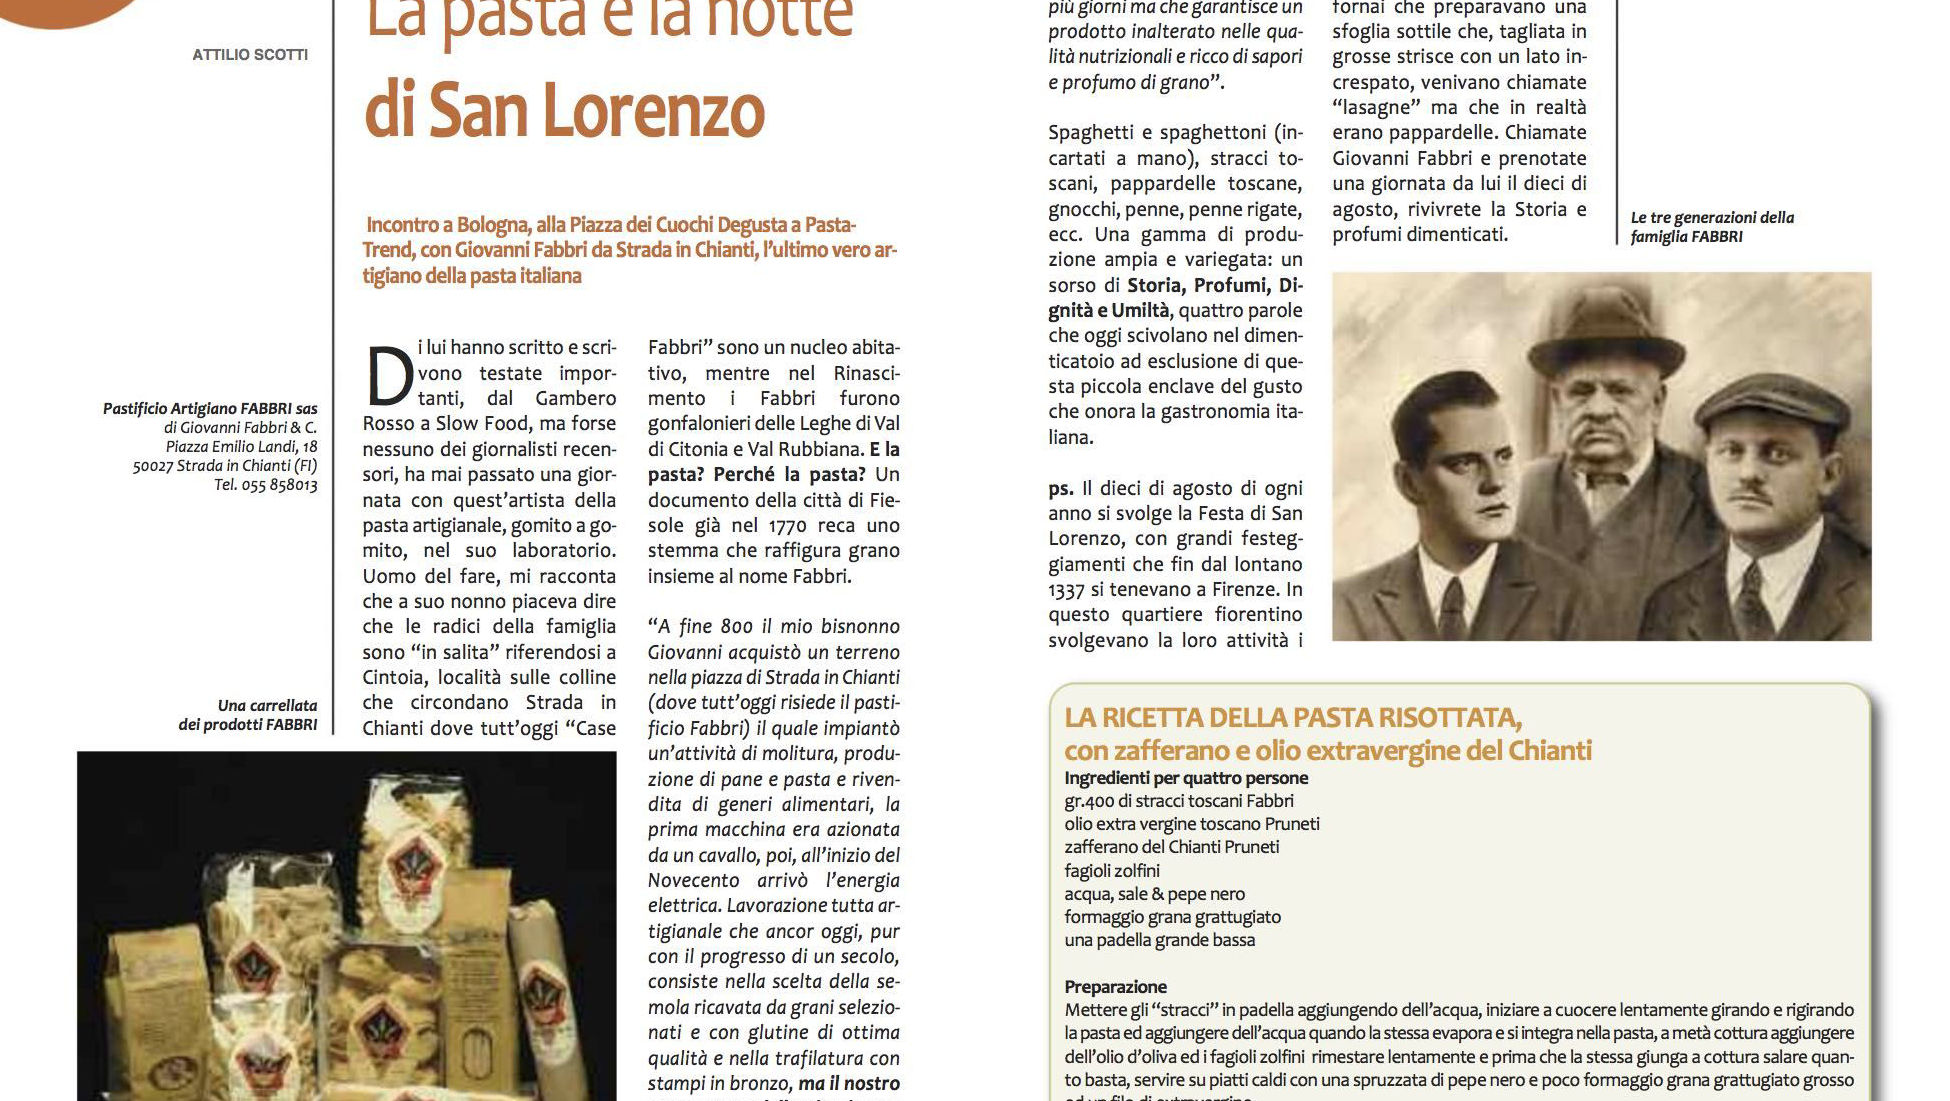 “La pasta e la notte di San Lorenzo”: la rivista “Degusta” incontra Giovanni Fabbri a PastaTrend